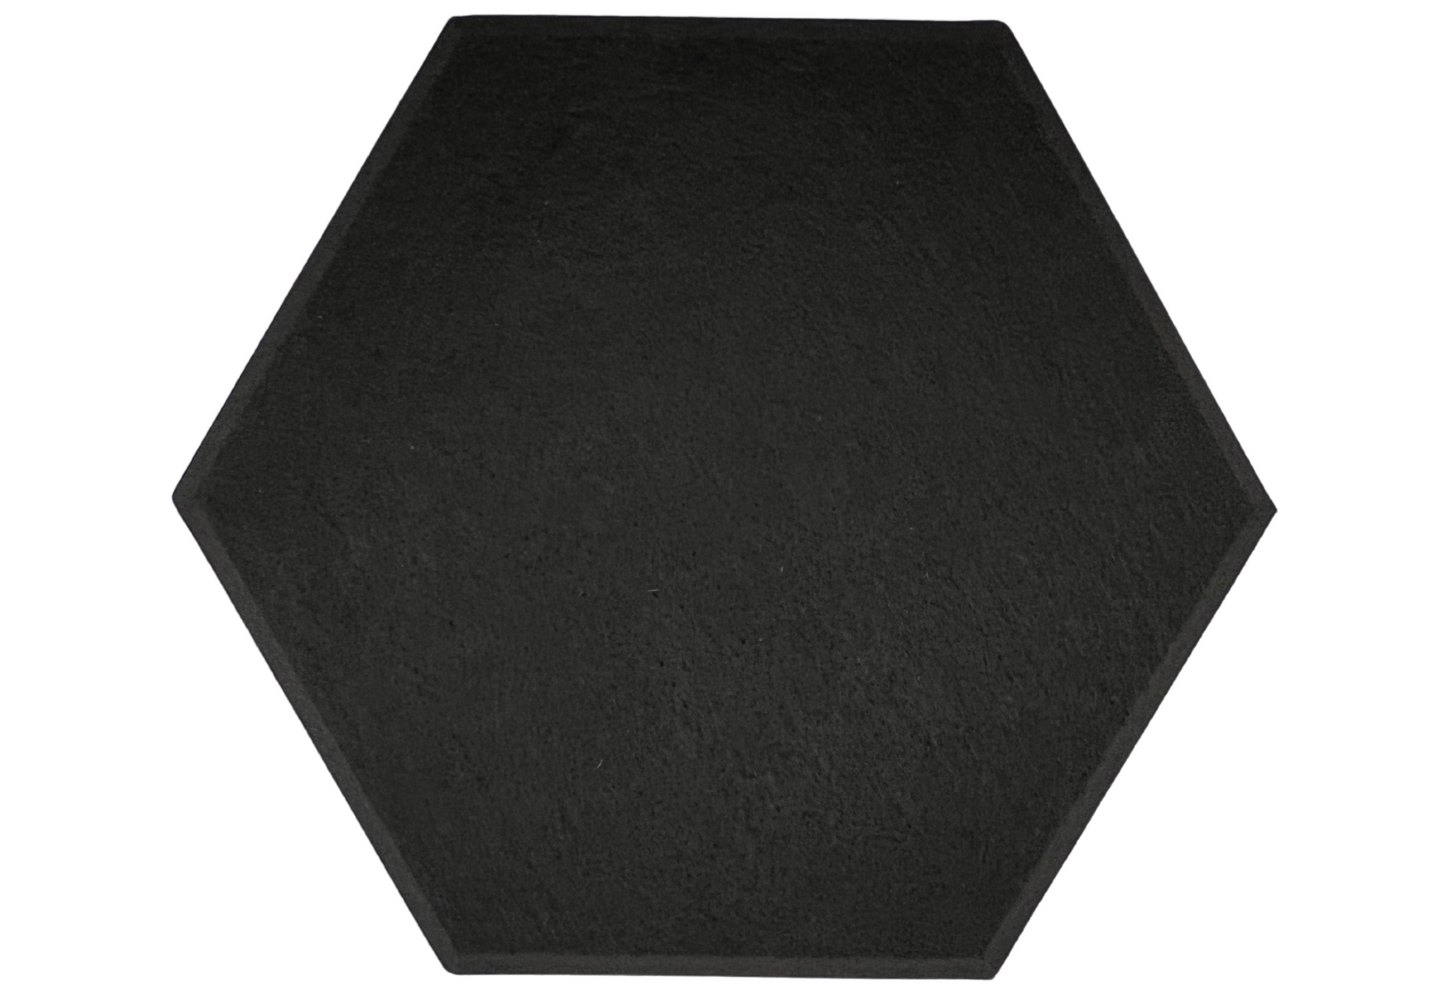 Hexagon PET Felt Acoustic Panels - 12 Pack - Eco Friendly Sound Absorption Panels